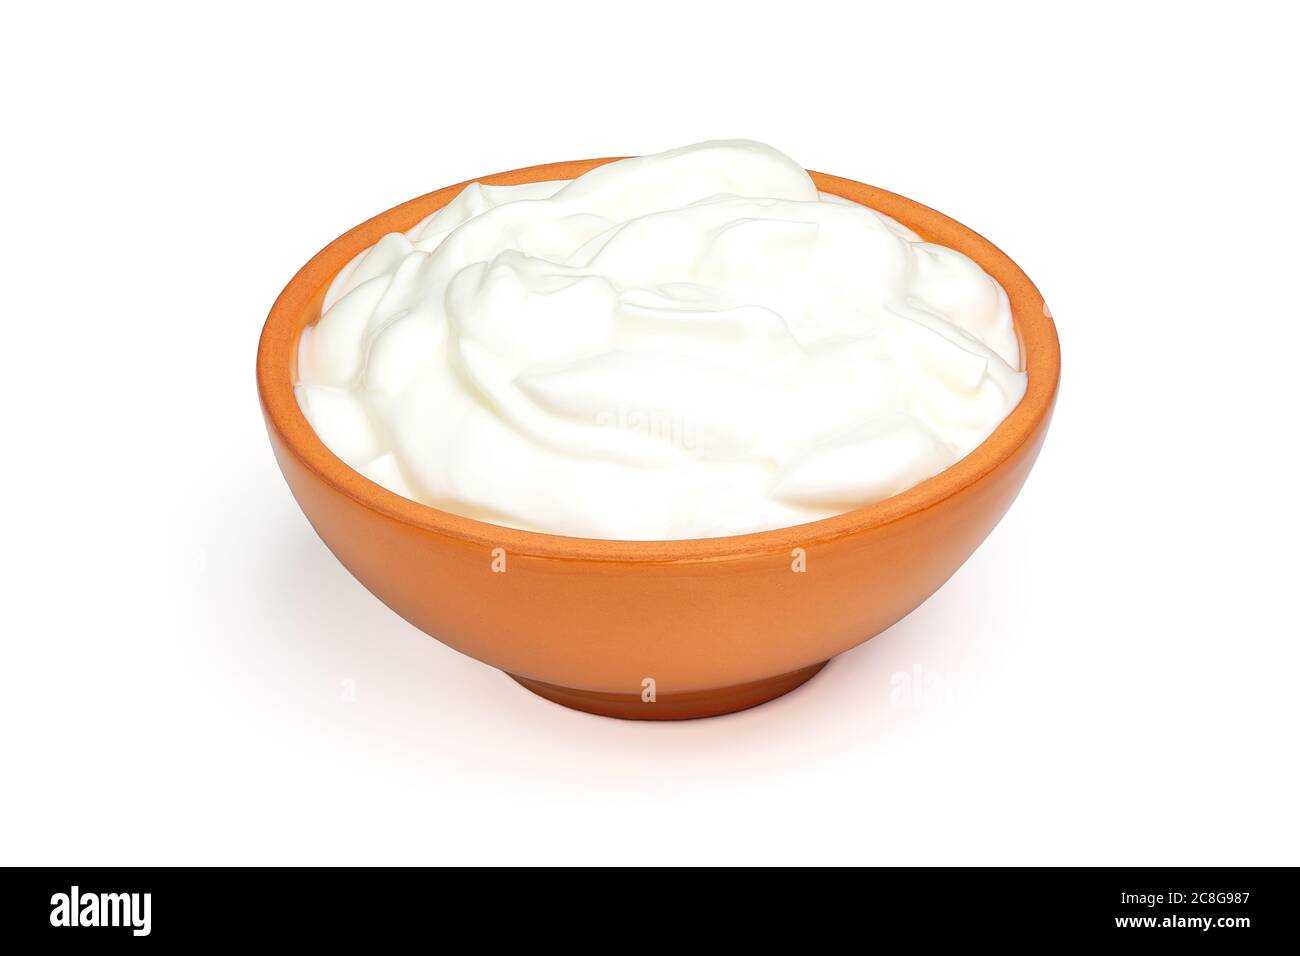 Crème sure, yaourt ou fromage cottage doux dans un bol en céramique isolé sur fond blanc. Produits laitiers naturels. Profondeur de champ complète avec masque Banque D'Images